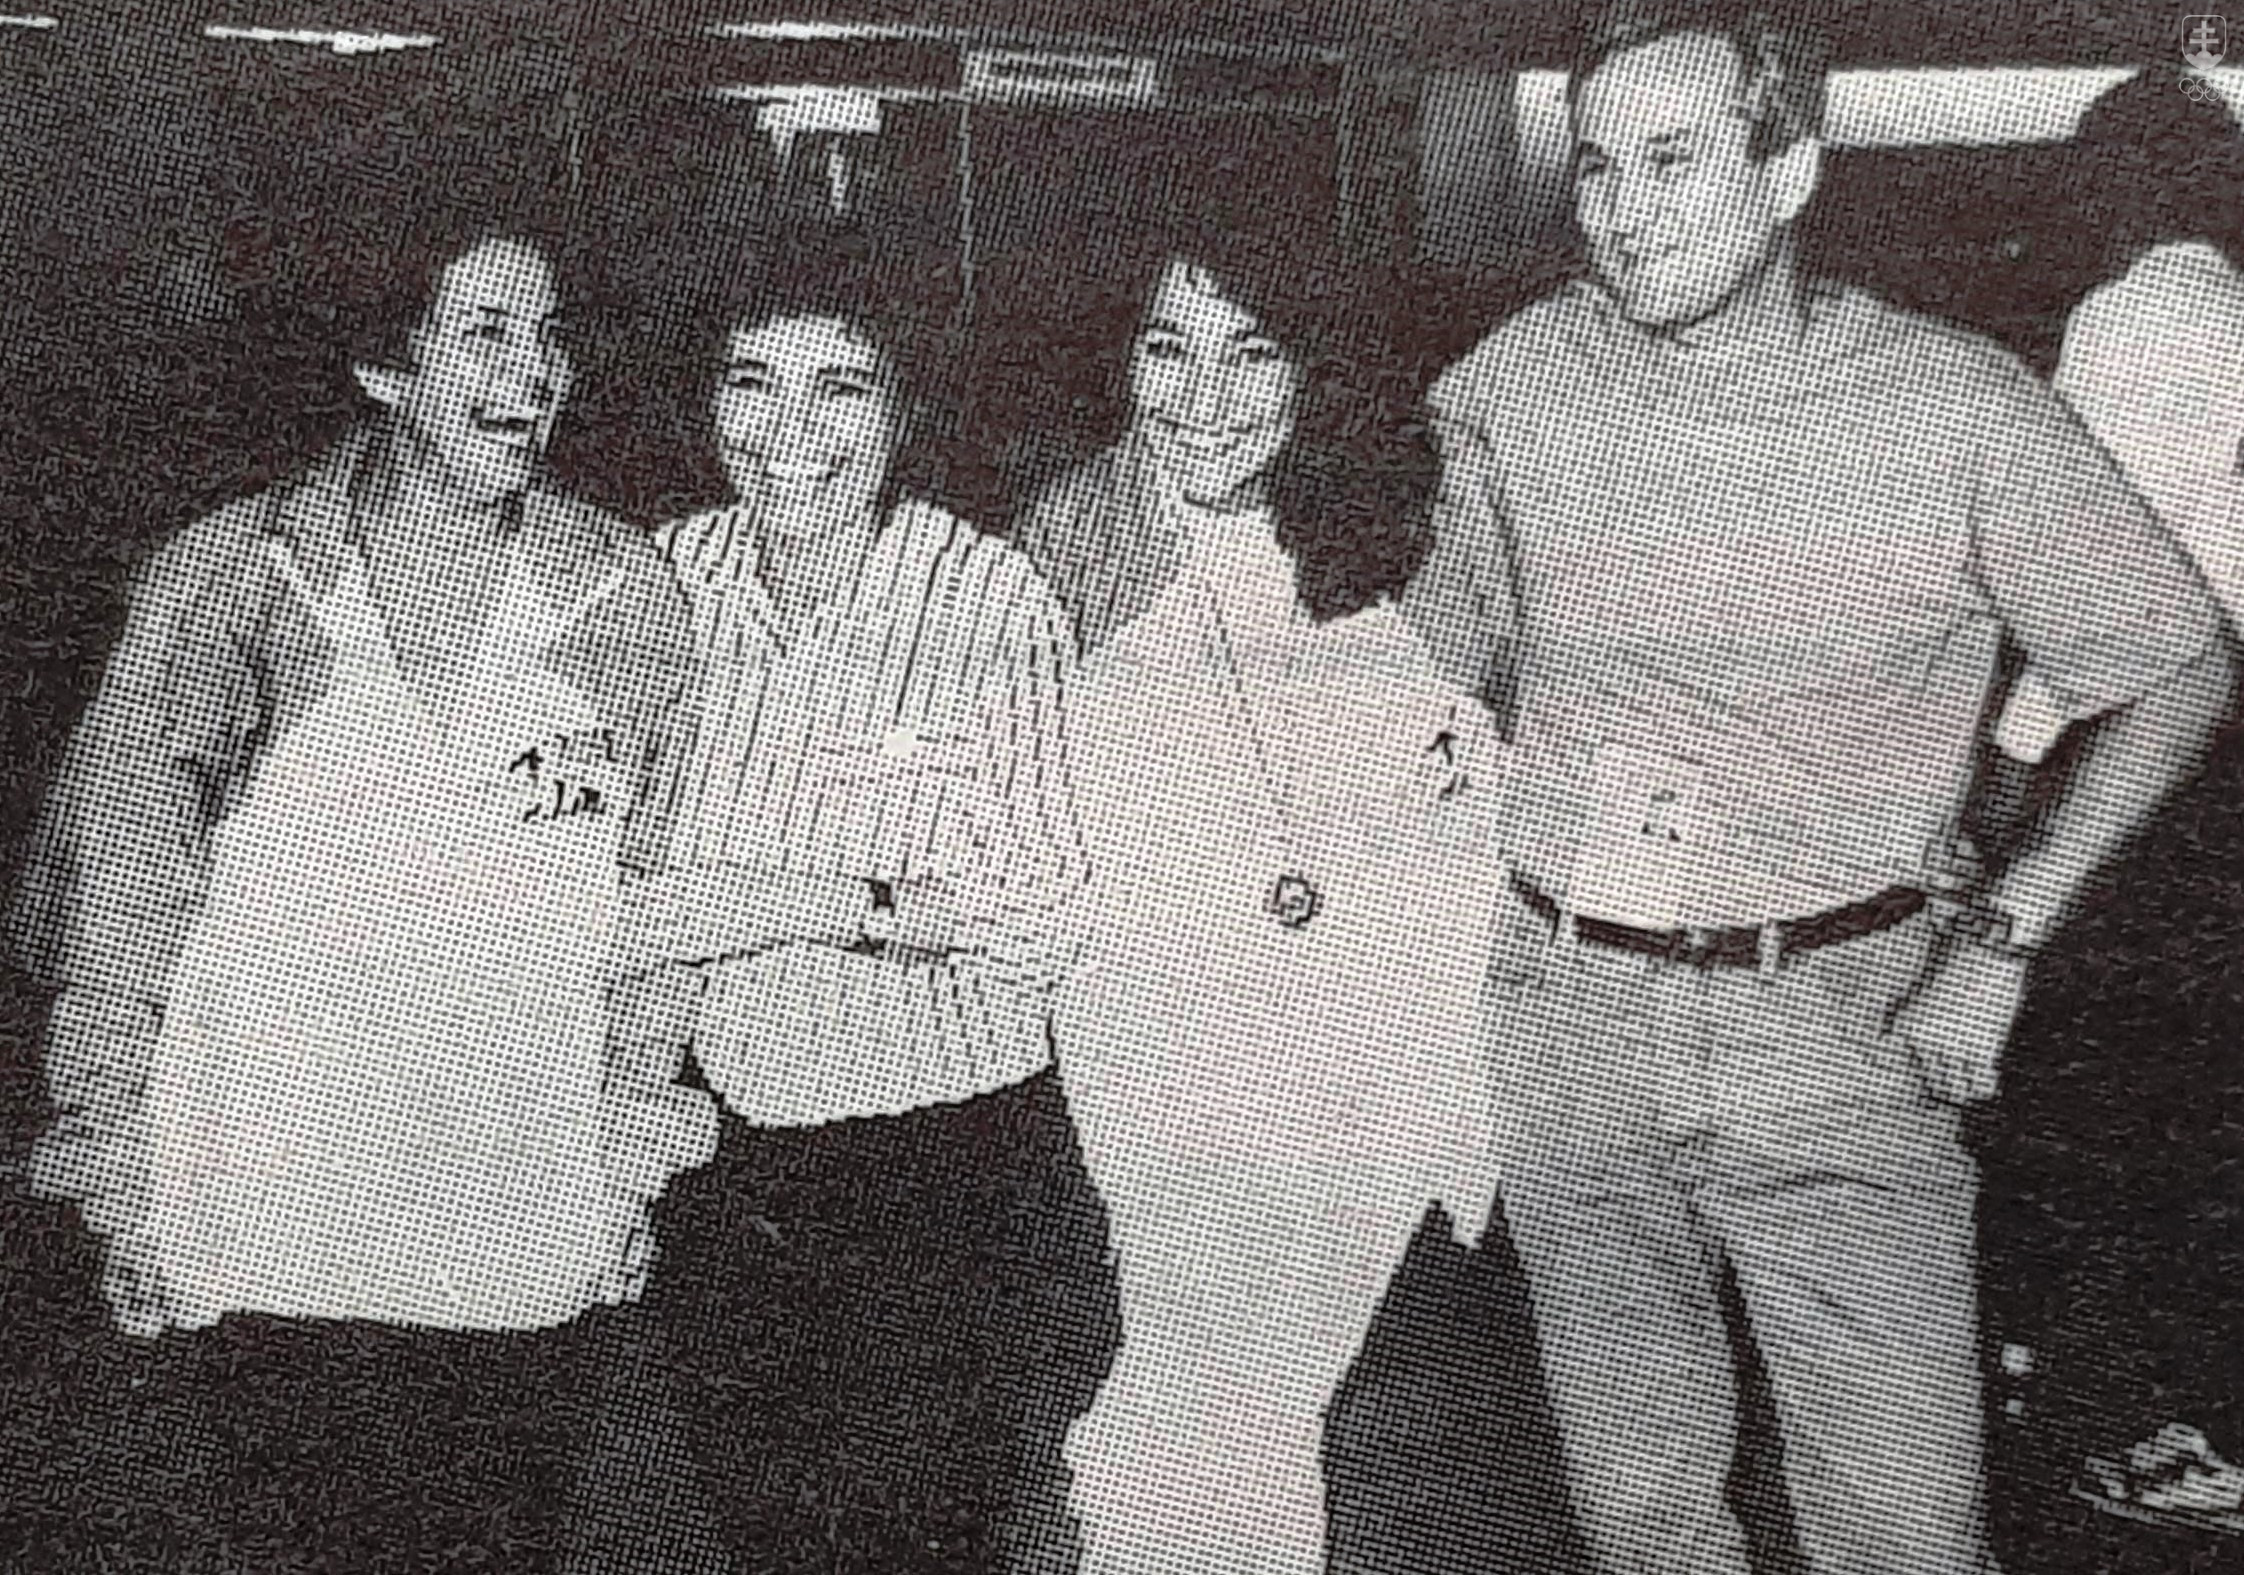 Fotografia z ME 1993 v Sheffielde, kde Martina Moravcová získala svoju prvú veľkú medailu z vrcholnej súťaže medzi ženami - striebro na 100 m voľný spôsob. S plavkyňou a jej trénerkou Věrou Čamborovou aj Martinini rodičia Darina a Karol Moravcoví.